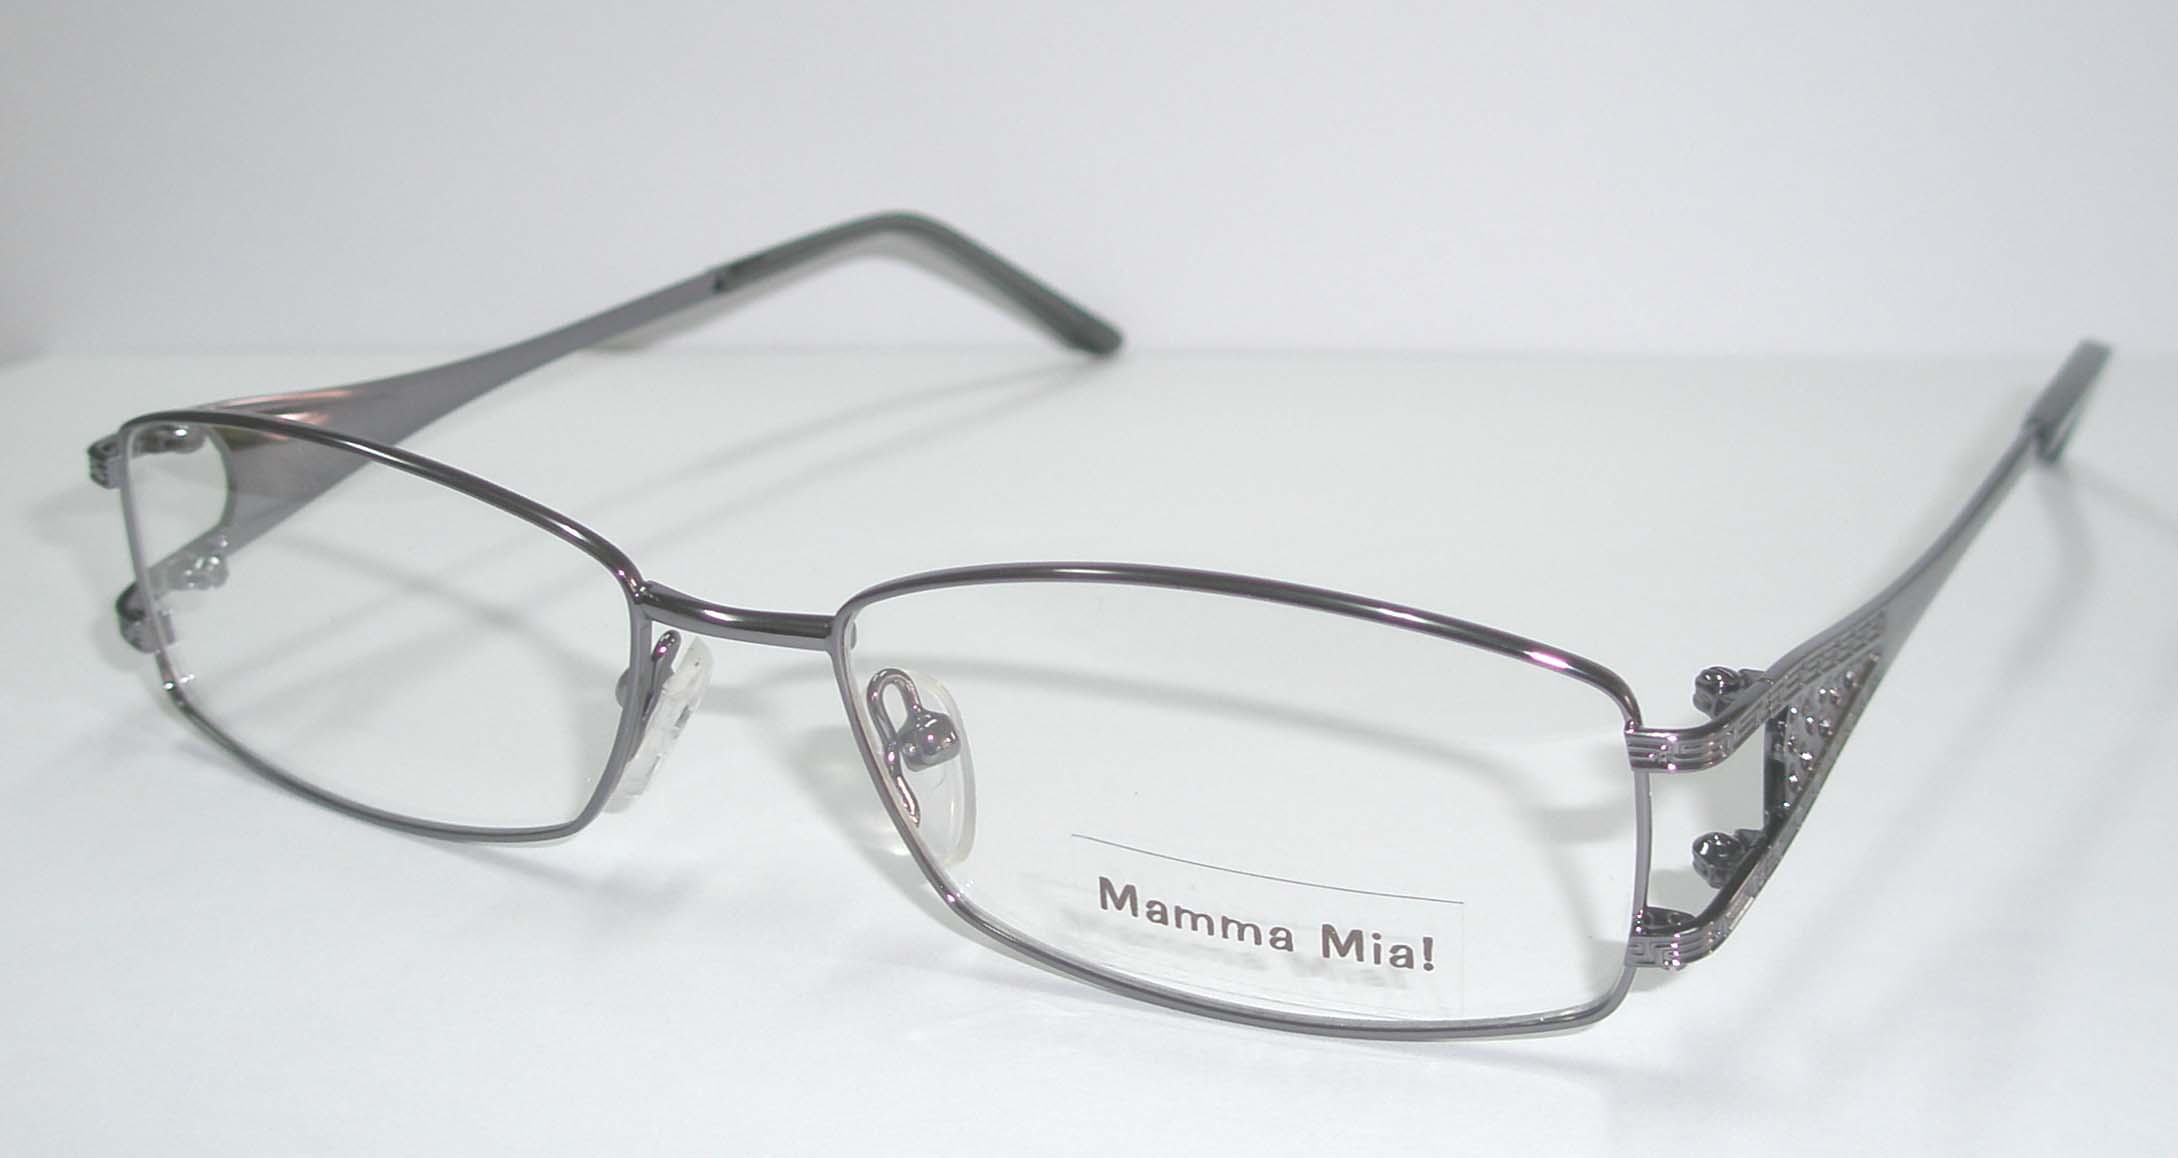  Eyewear Metal Optical Frame ( Eyewear Metal Optical Frame)